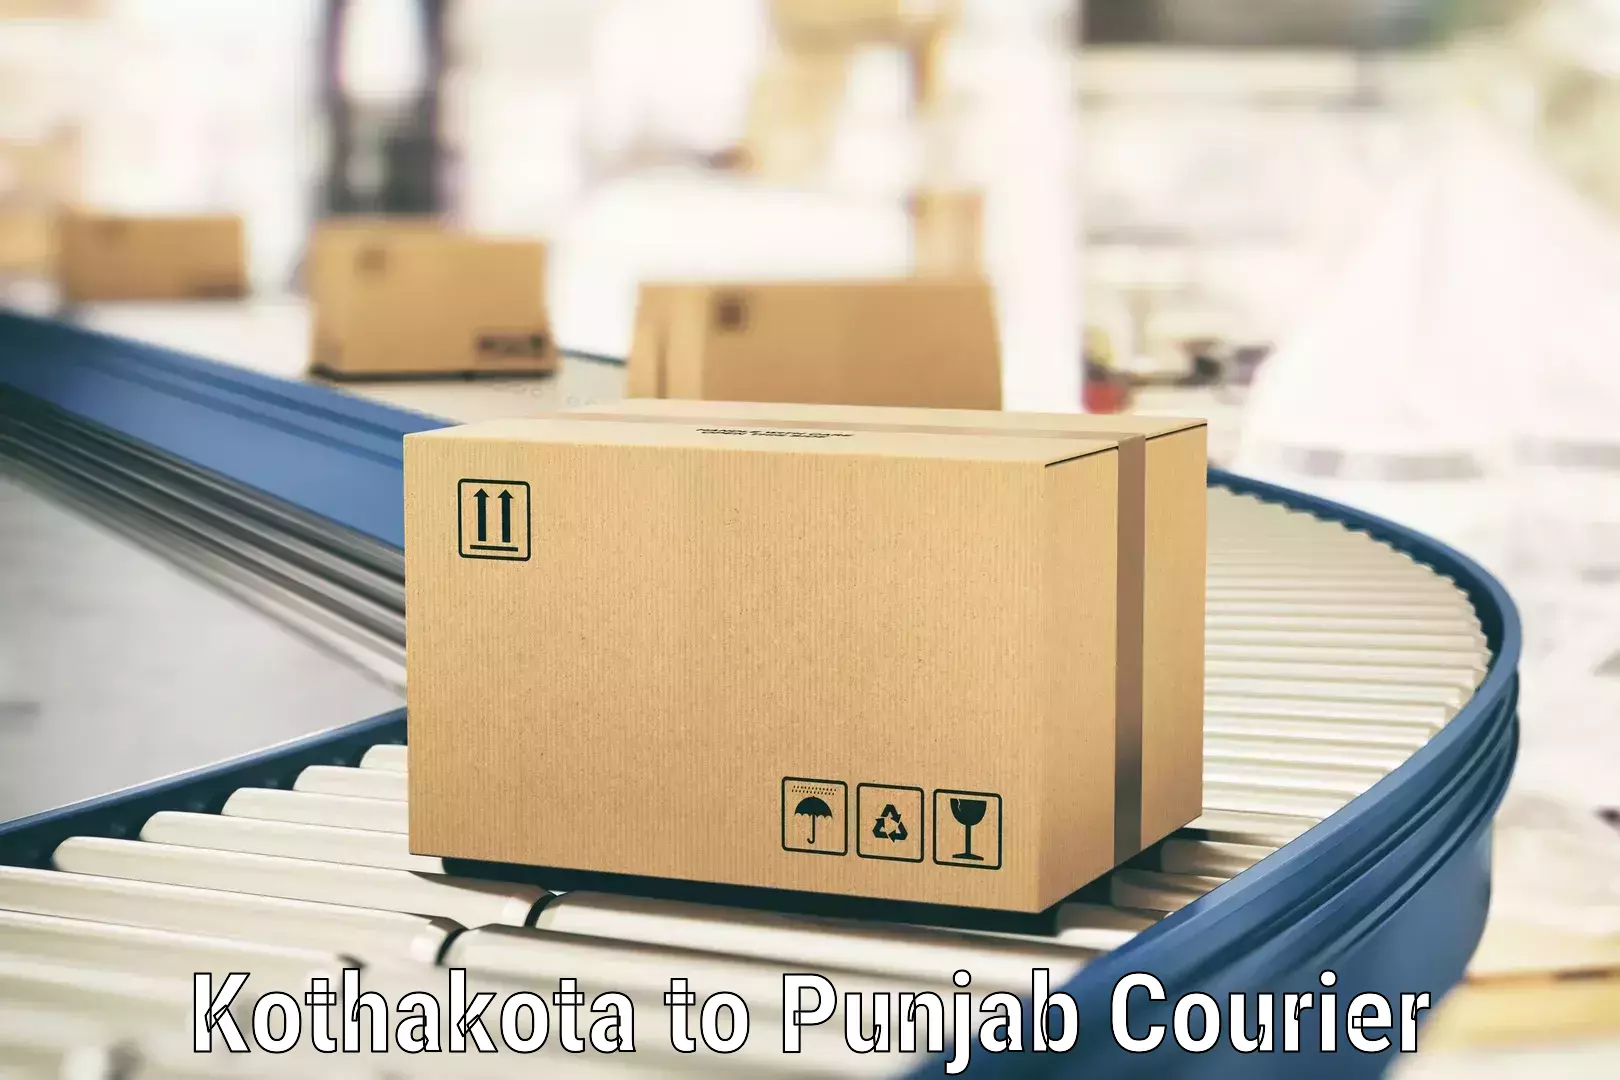 Expedited parcel delivery Kothakota to Dinanagar